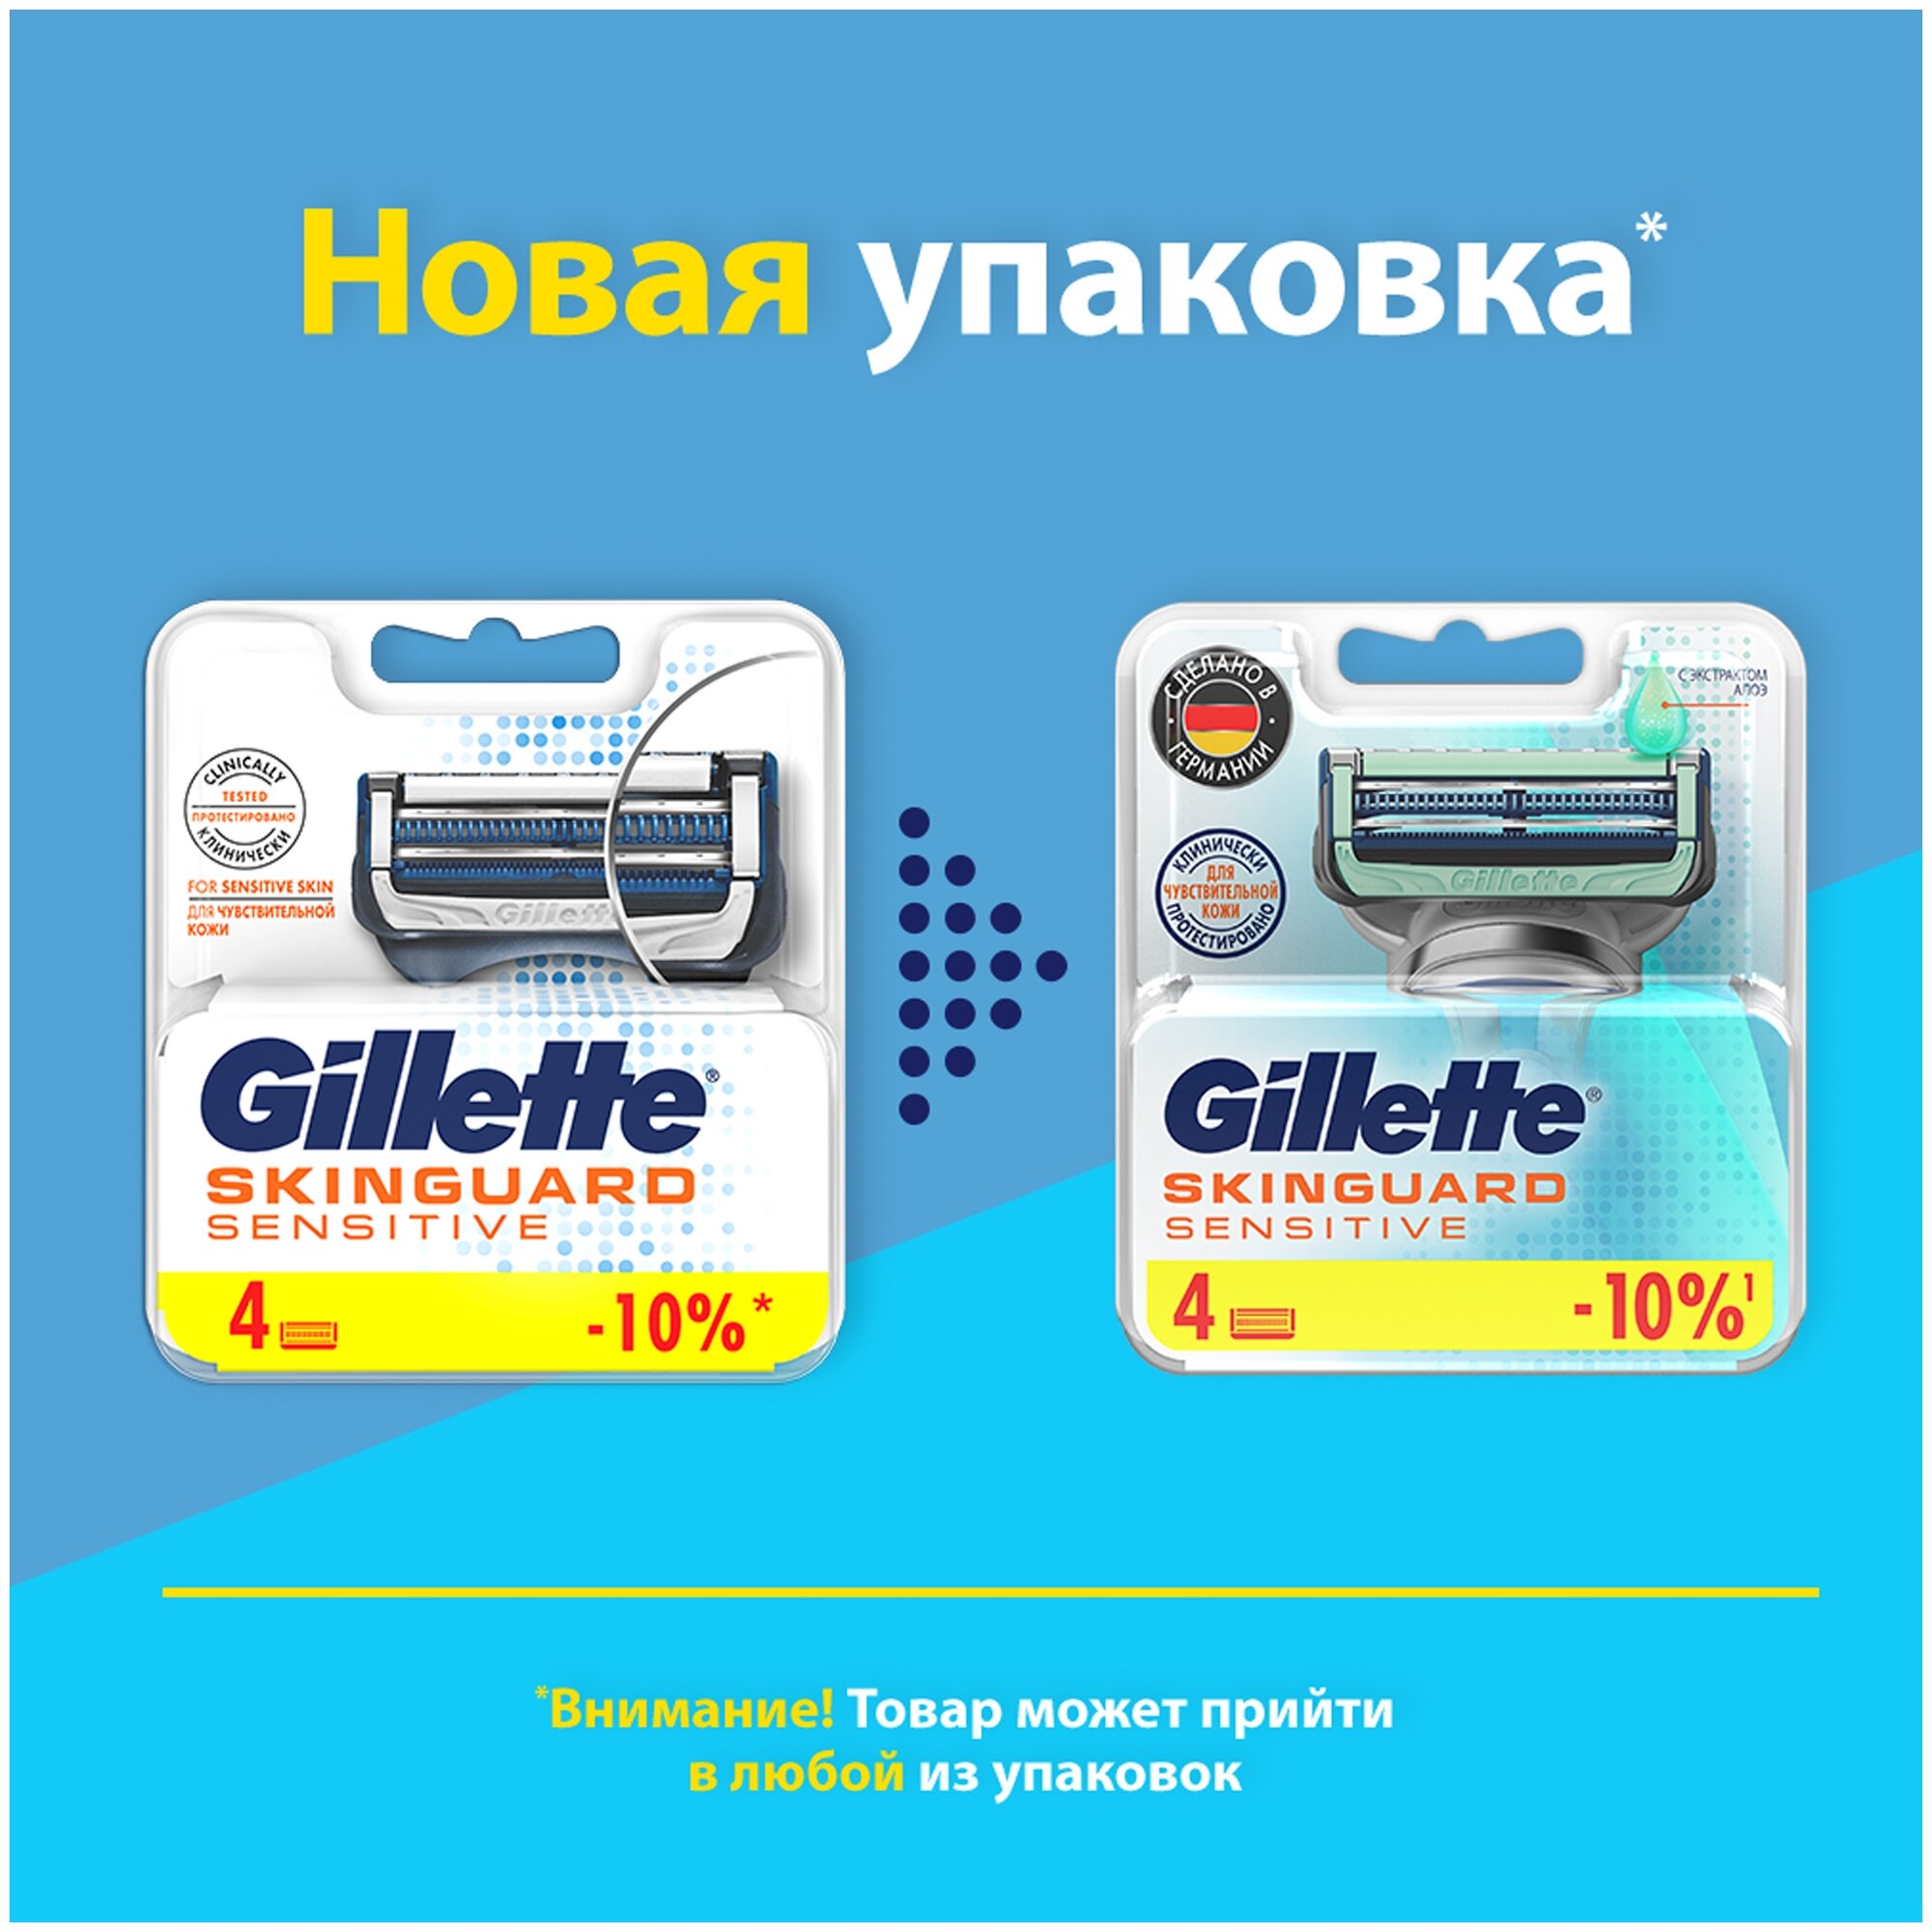 Сменные картриджи для бритья Gillette SkinGuard Sensetive, 6 шт. - фото №2